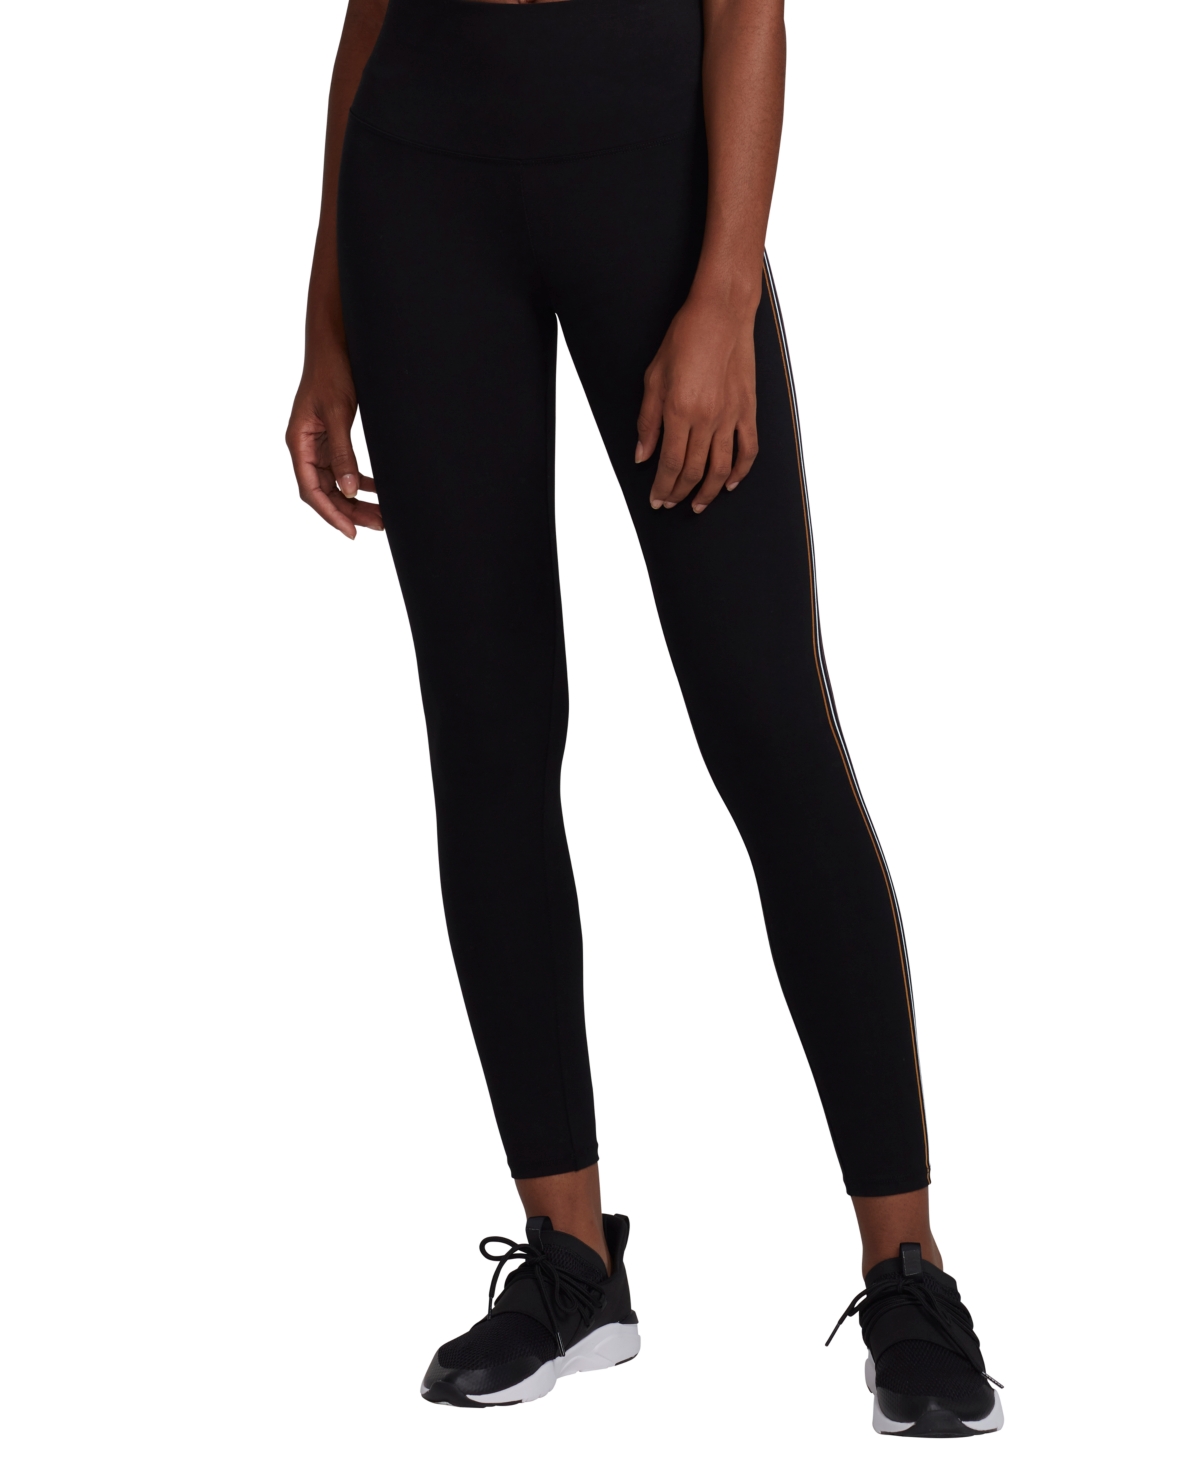 Marc New York Andrew Marc Sport Women's Full Length Leggings With Colorful Side Stripe In Black